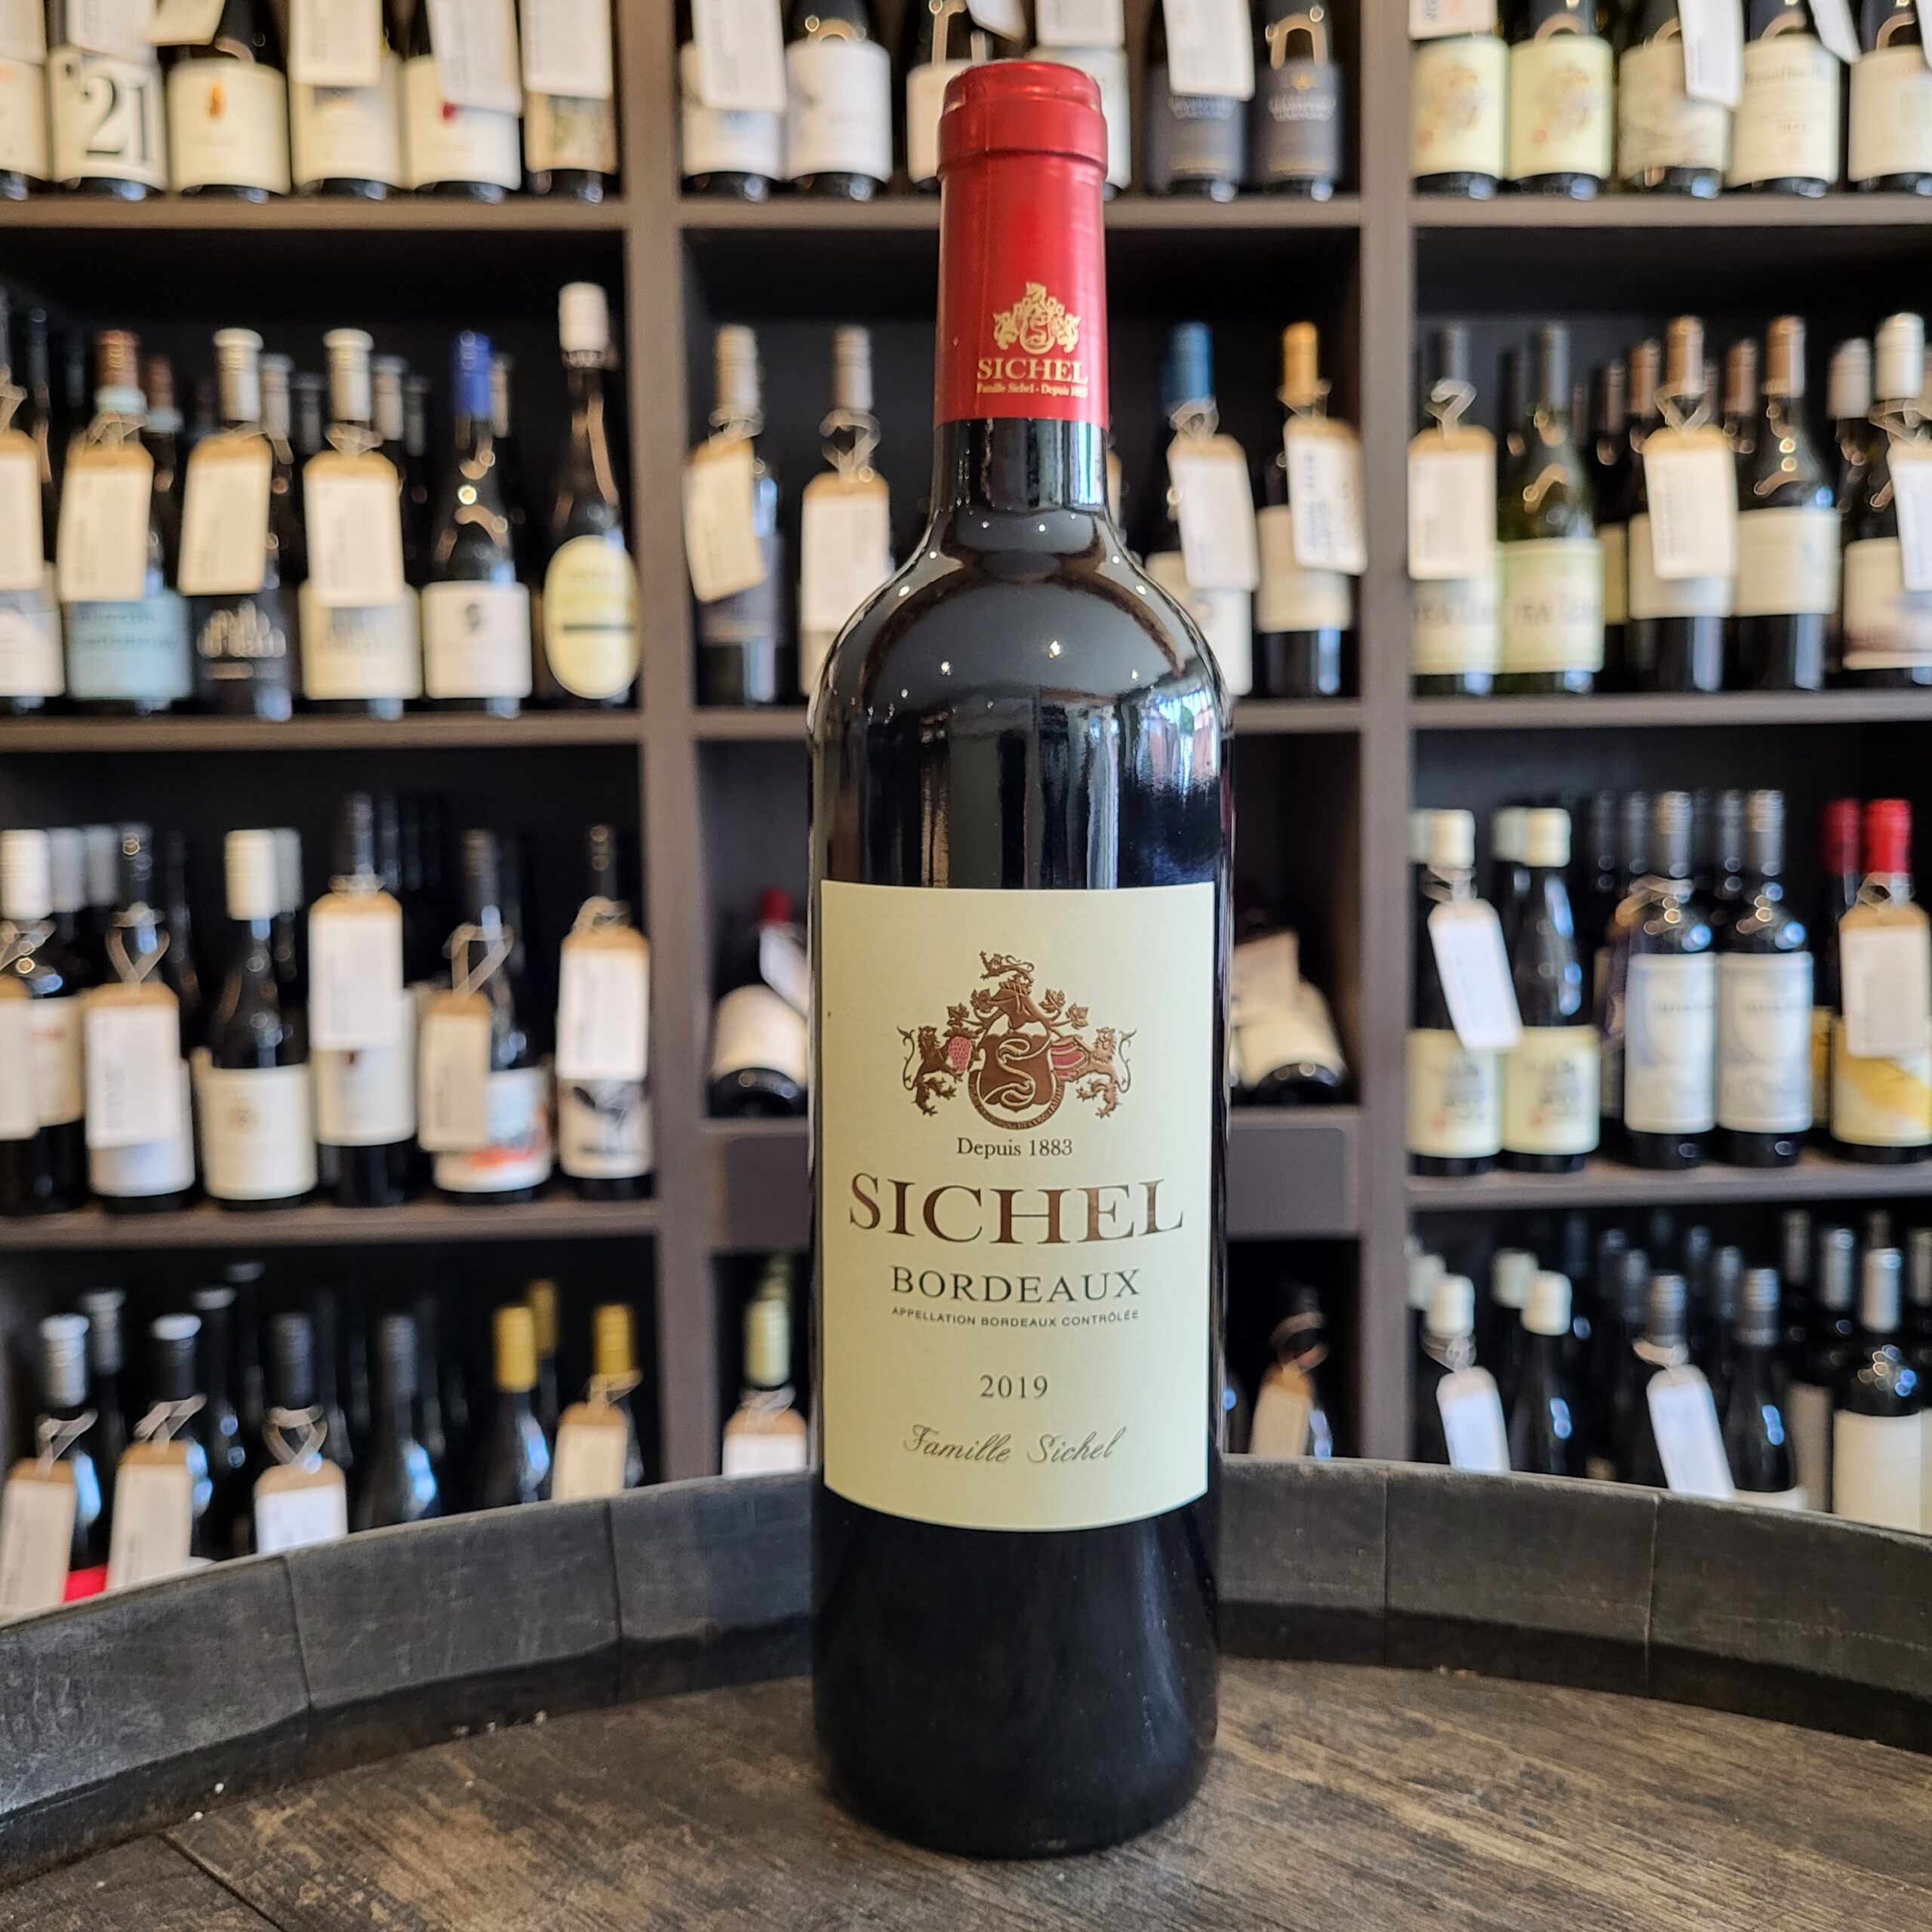 Sichel Bordeaux 2019